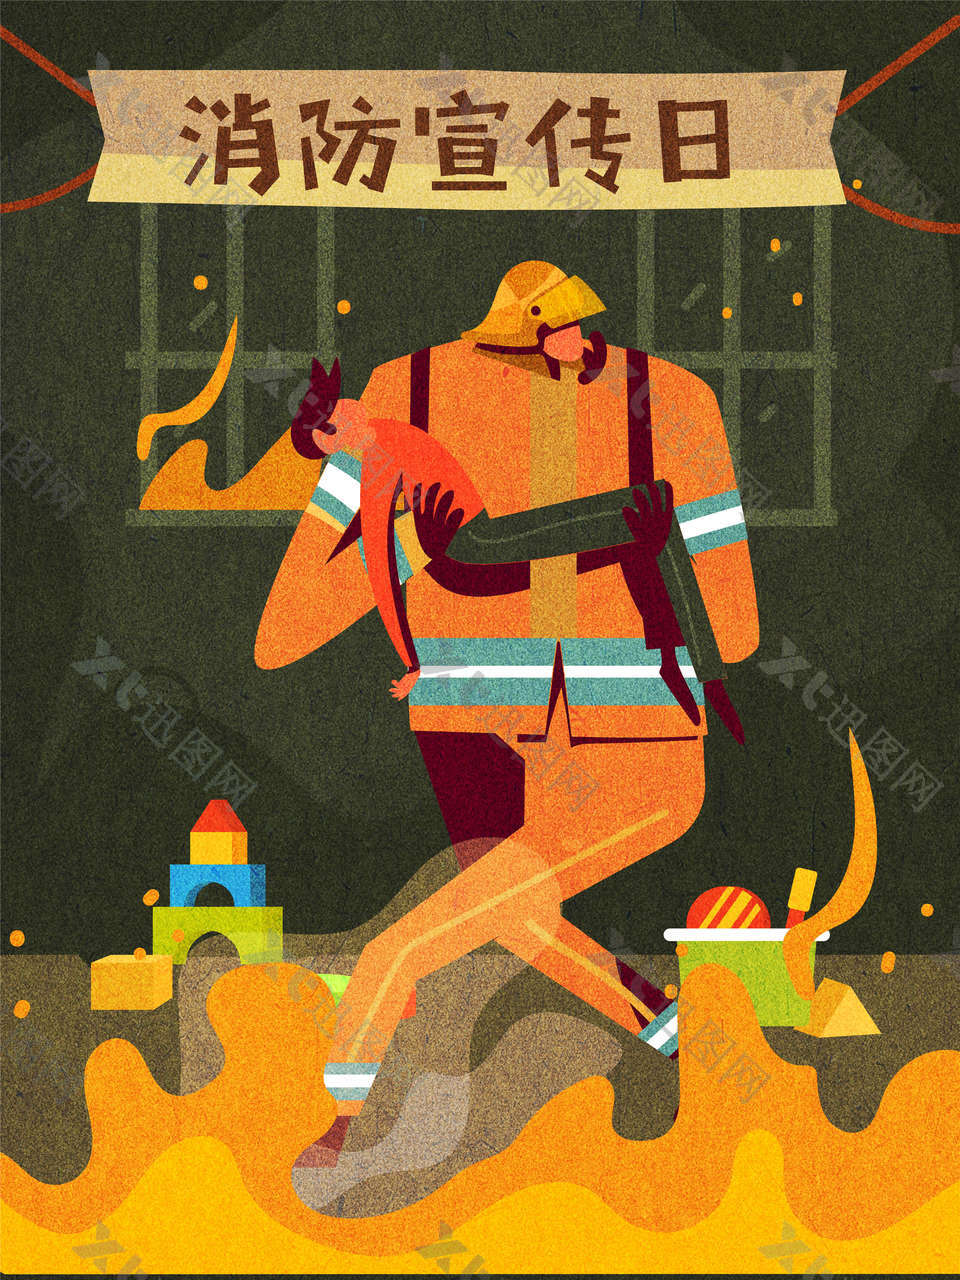 消防宣传日节日模板下载